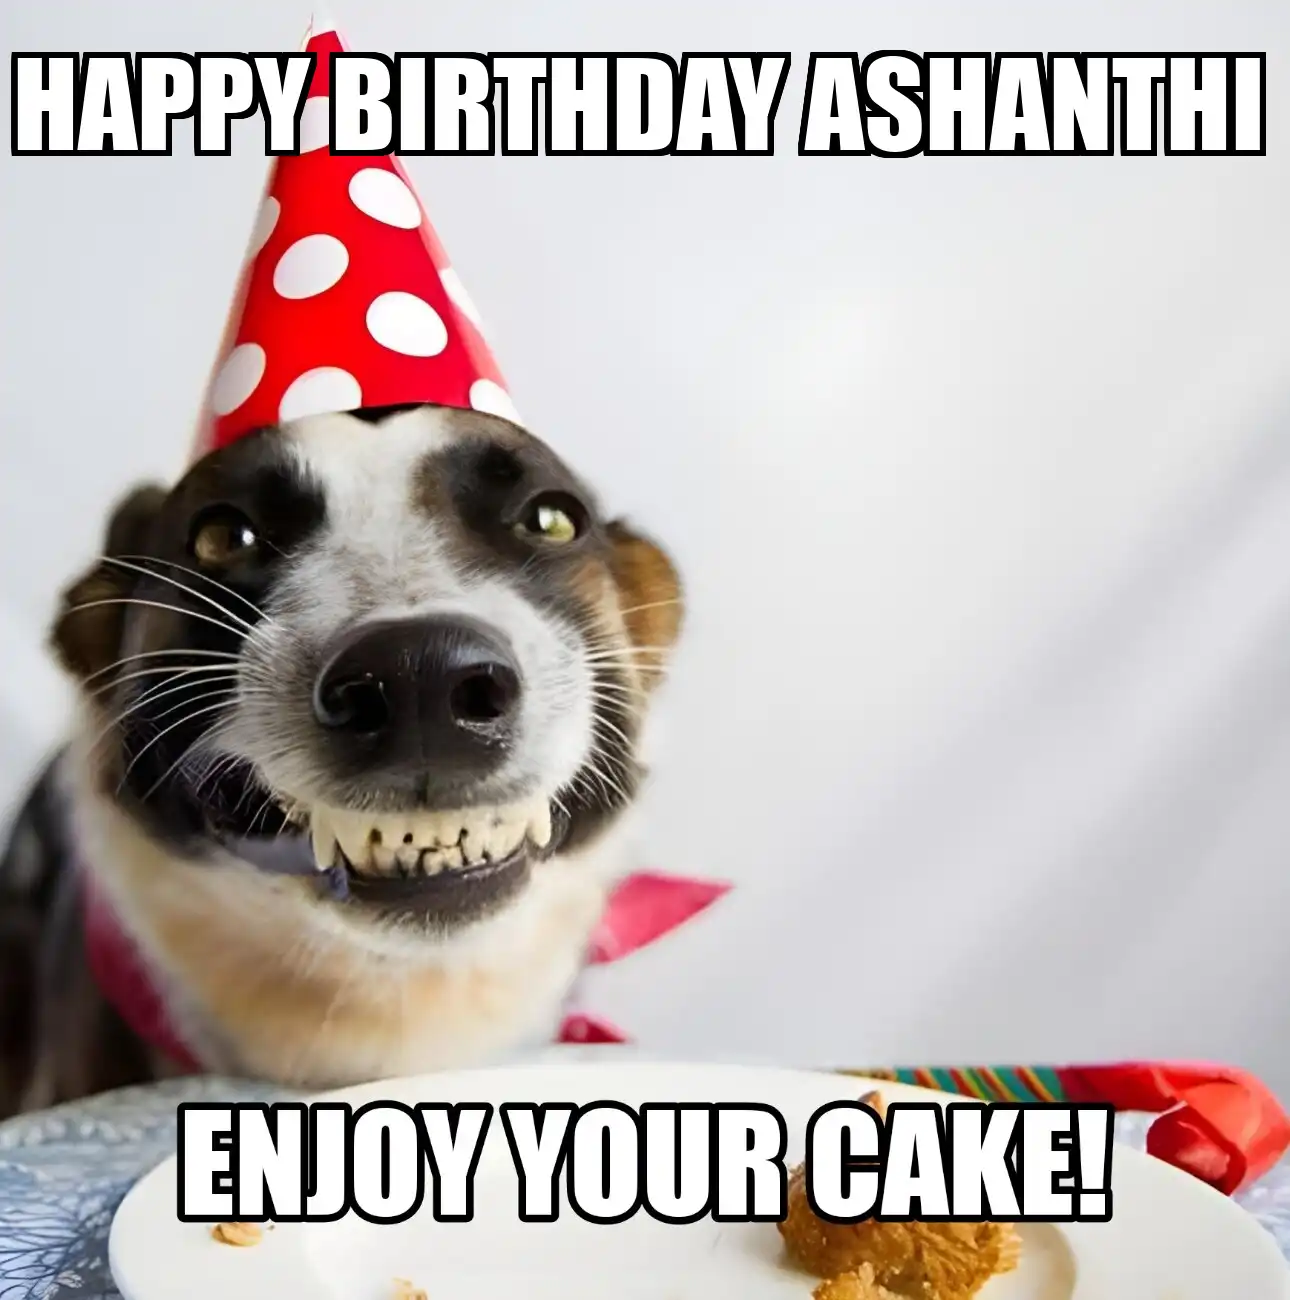 Happy Birthday Ashanthi Enjoy Your Cake Dog Meme